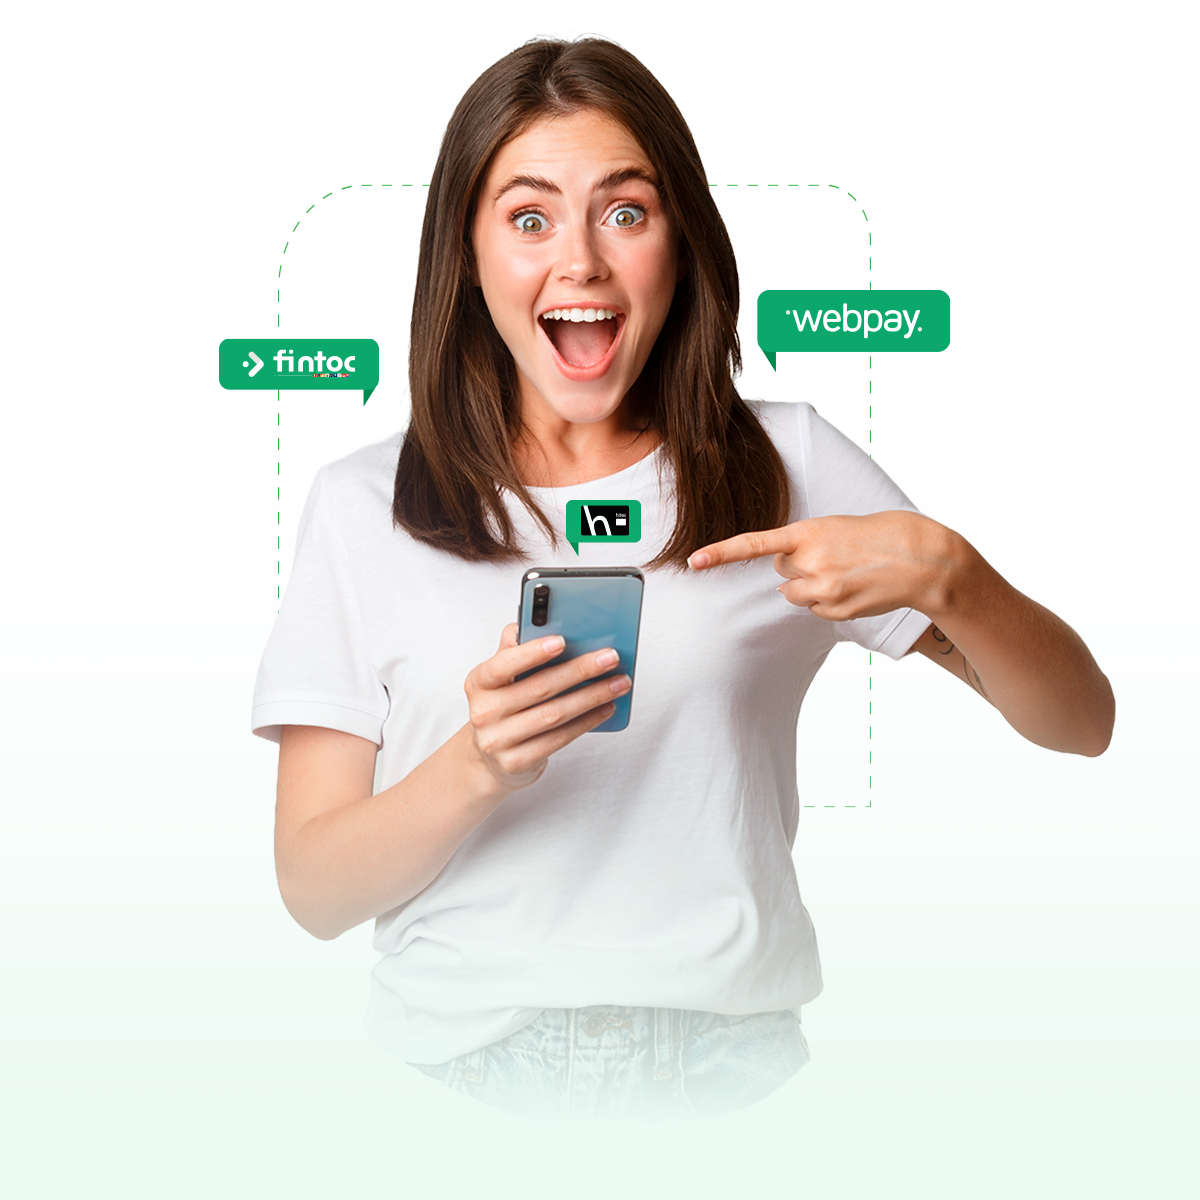 Mujer joven sonriendo y apuntando a su celular. En la imagen se sobreimprime el logo de Webpay y Fintoc